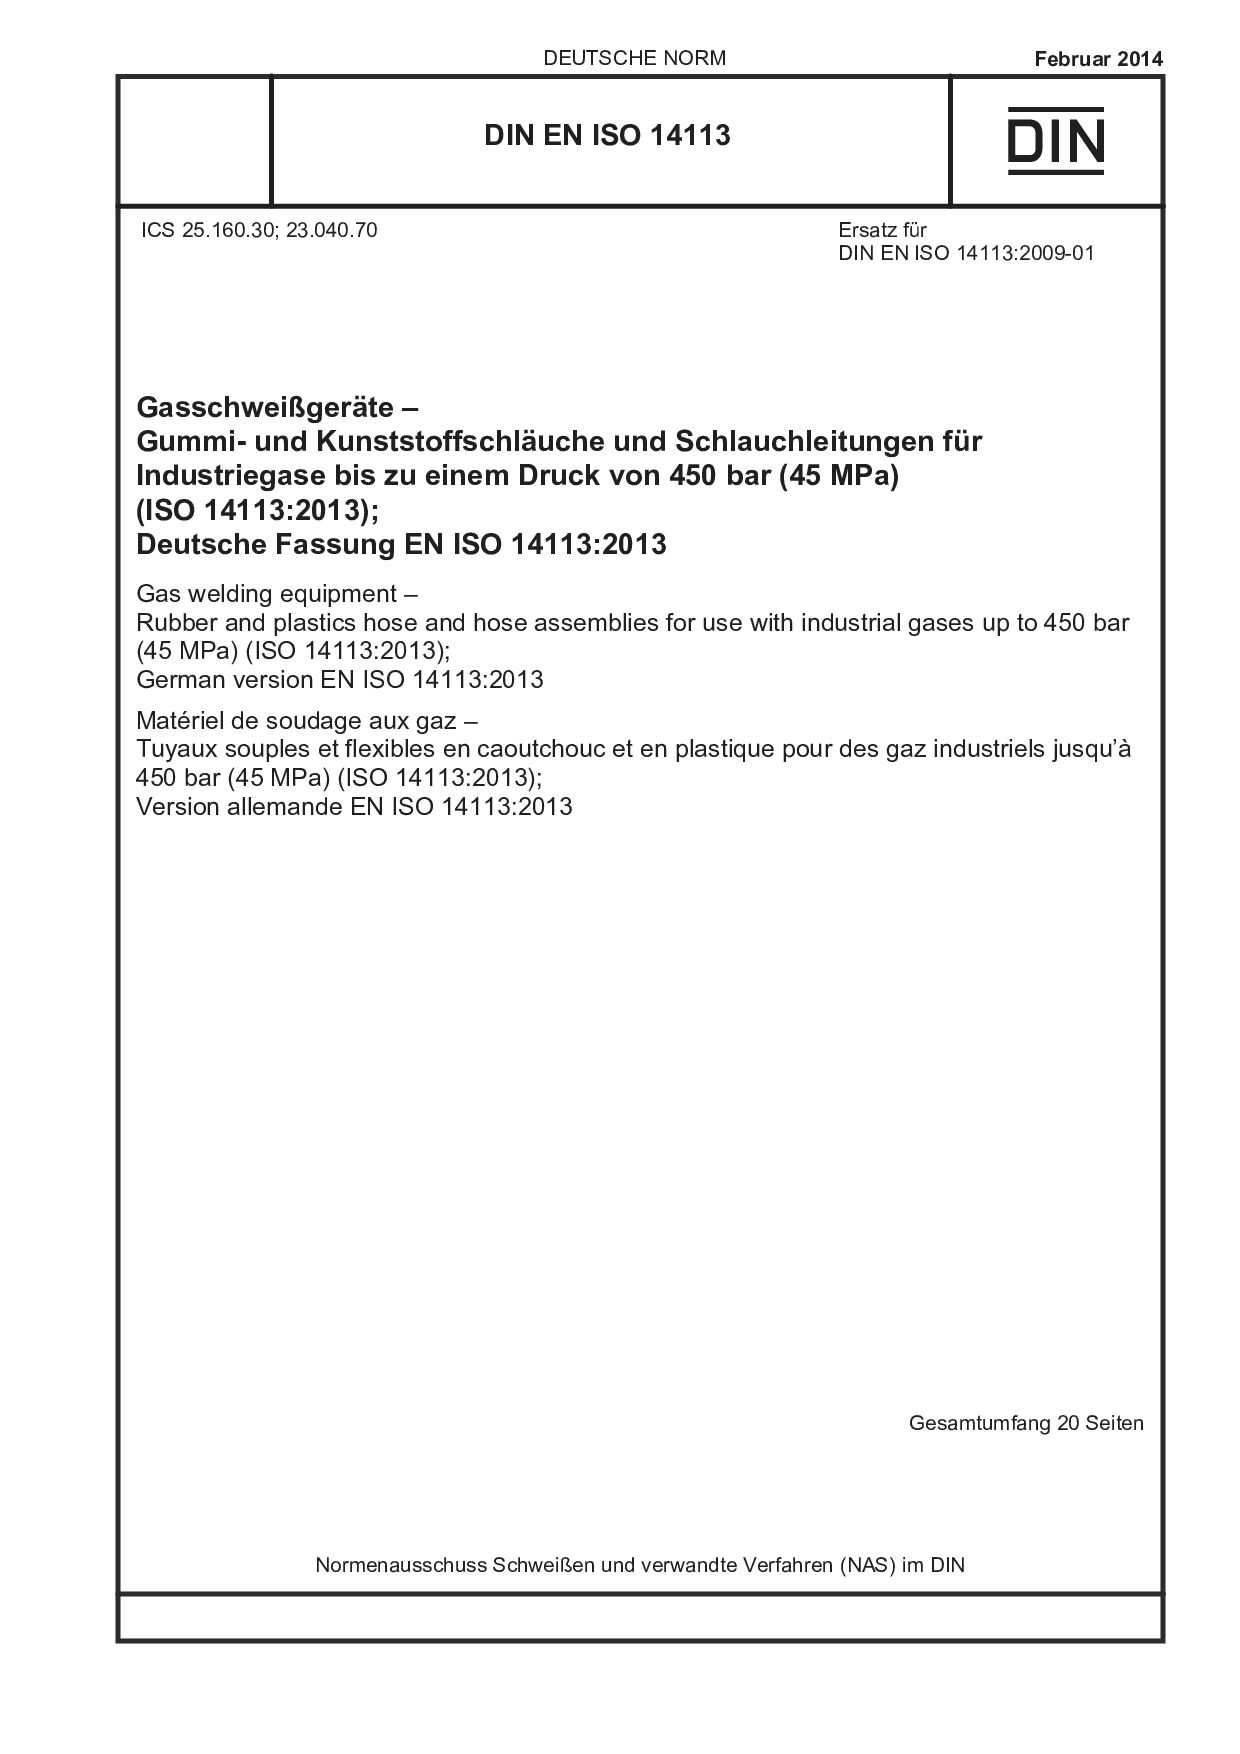 DIN EN ISO 14113:2014封面图